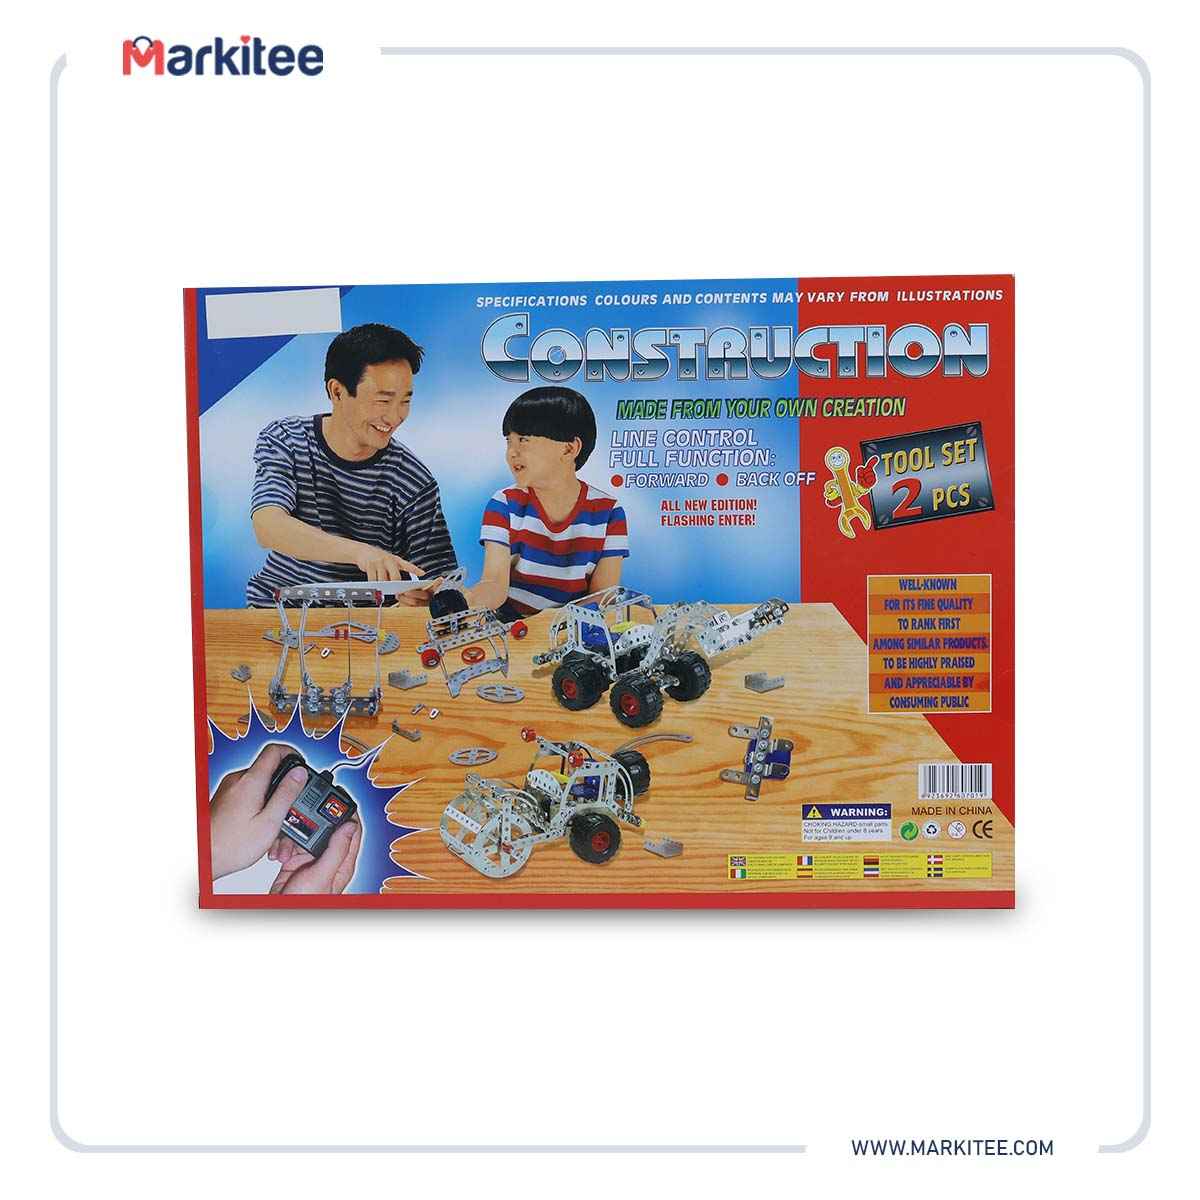 ماركيتي-markitee-20220511224239277_Markitee-Toys-701(11).JPG